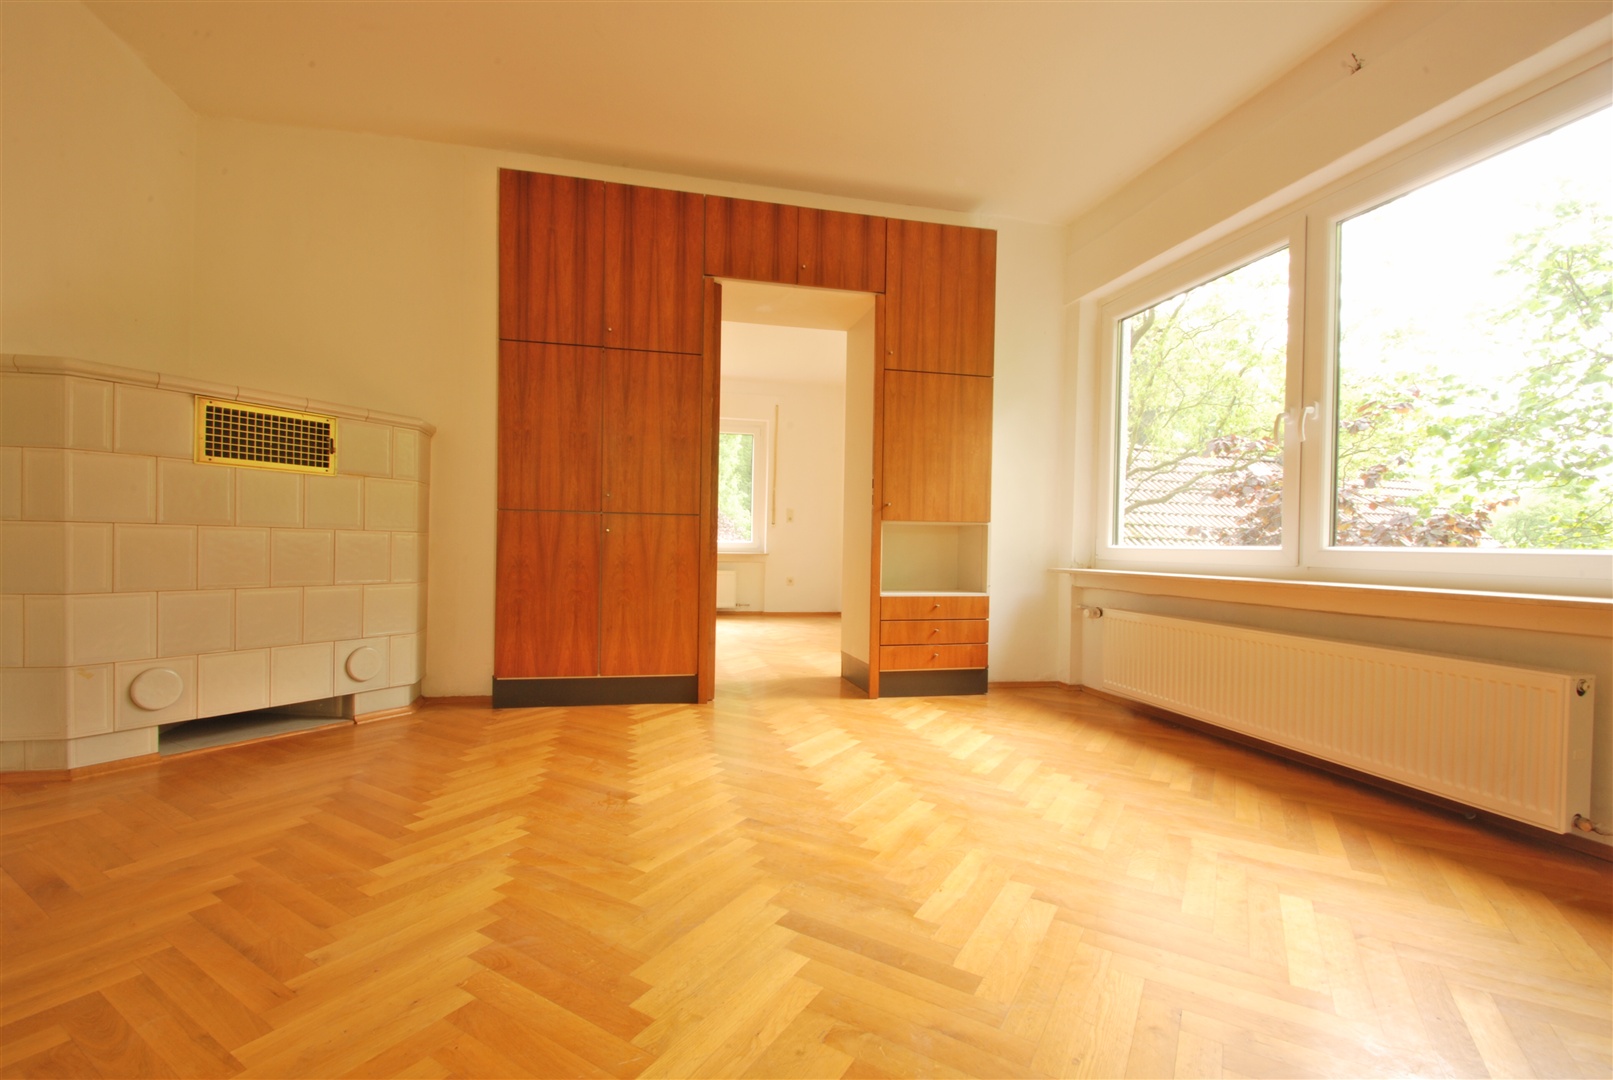 schlafzimmer 1 im 1. og mit kachelofen - Oliver Reifferscheid - Immobilienmakler Darmstadt